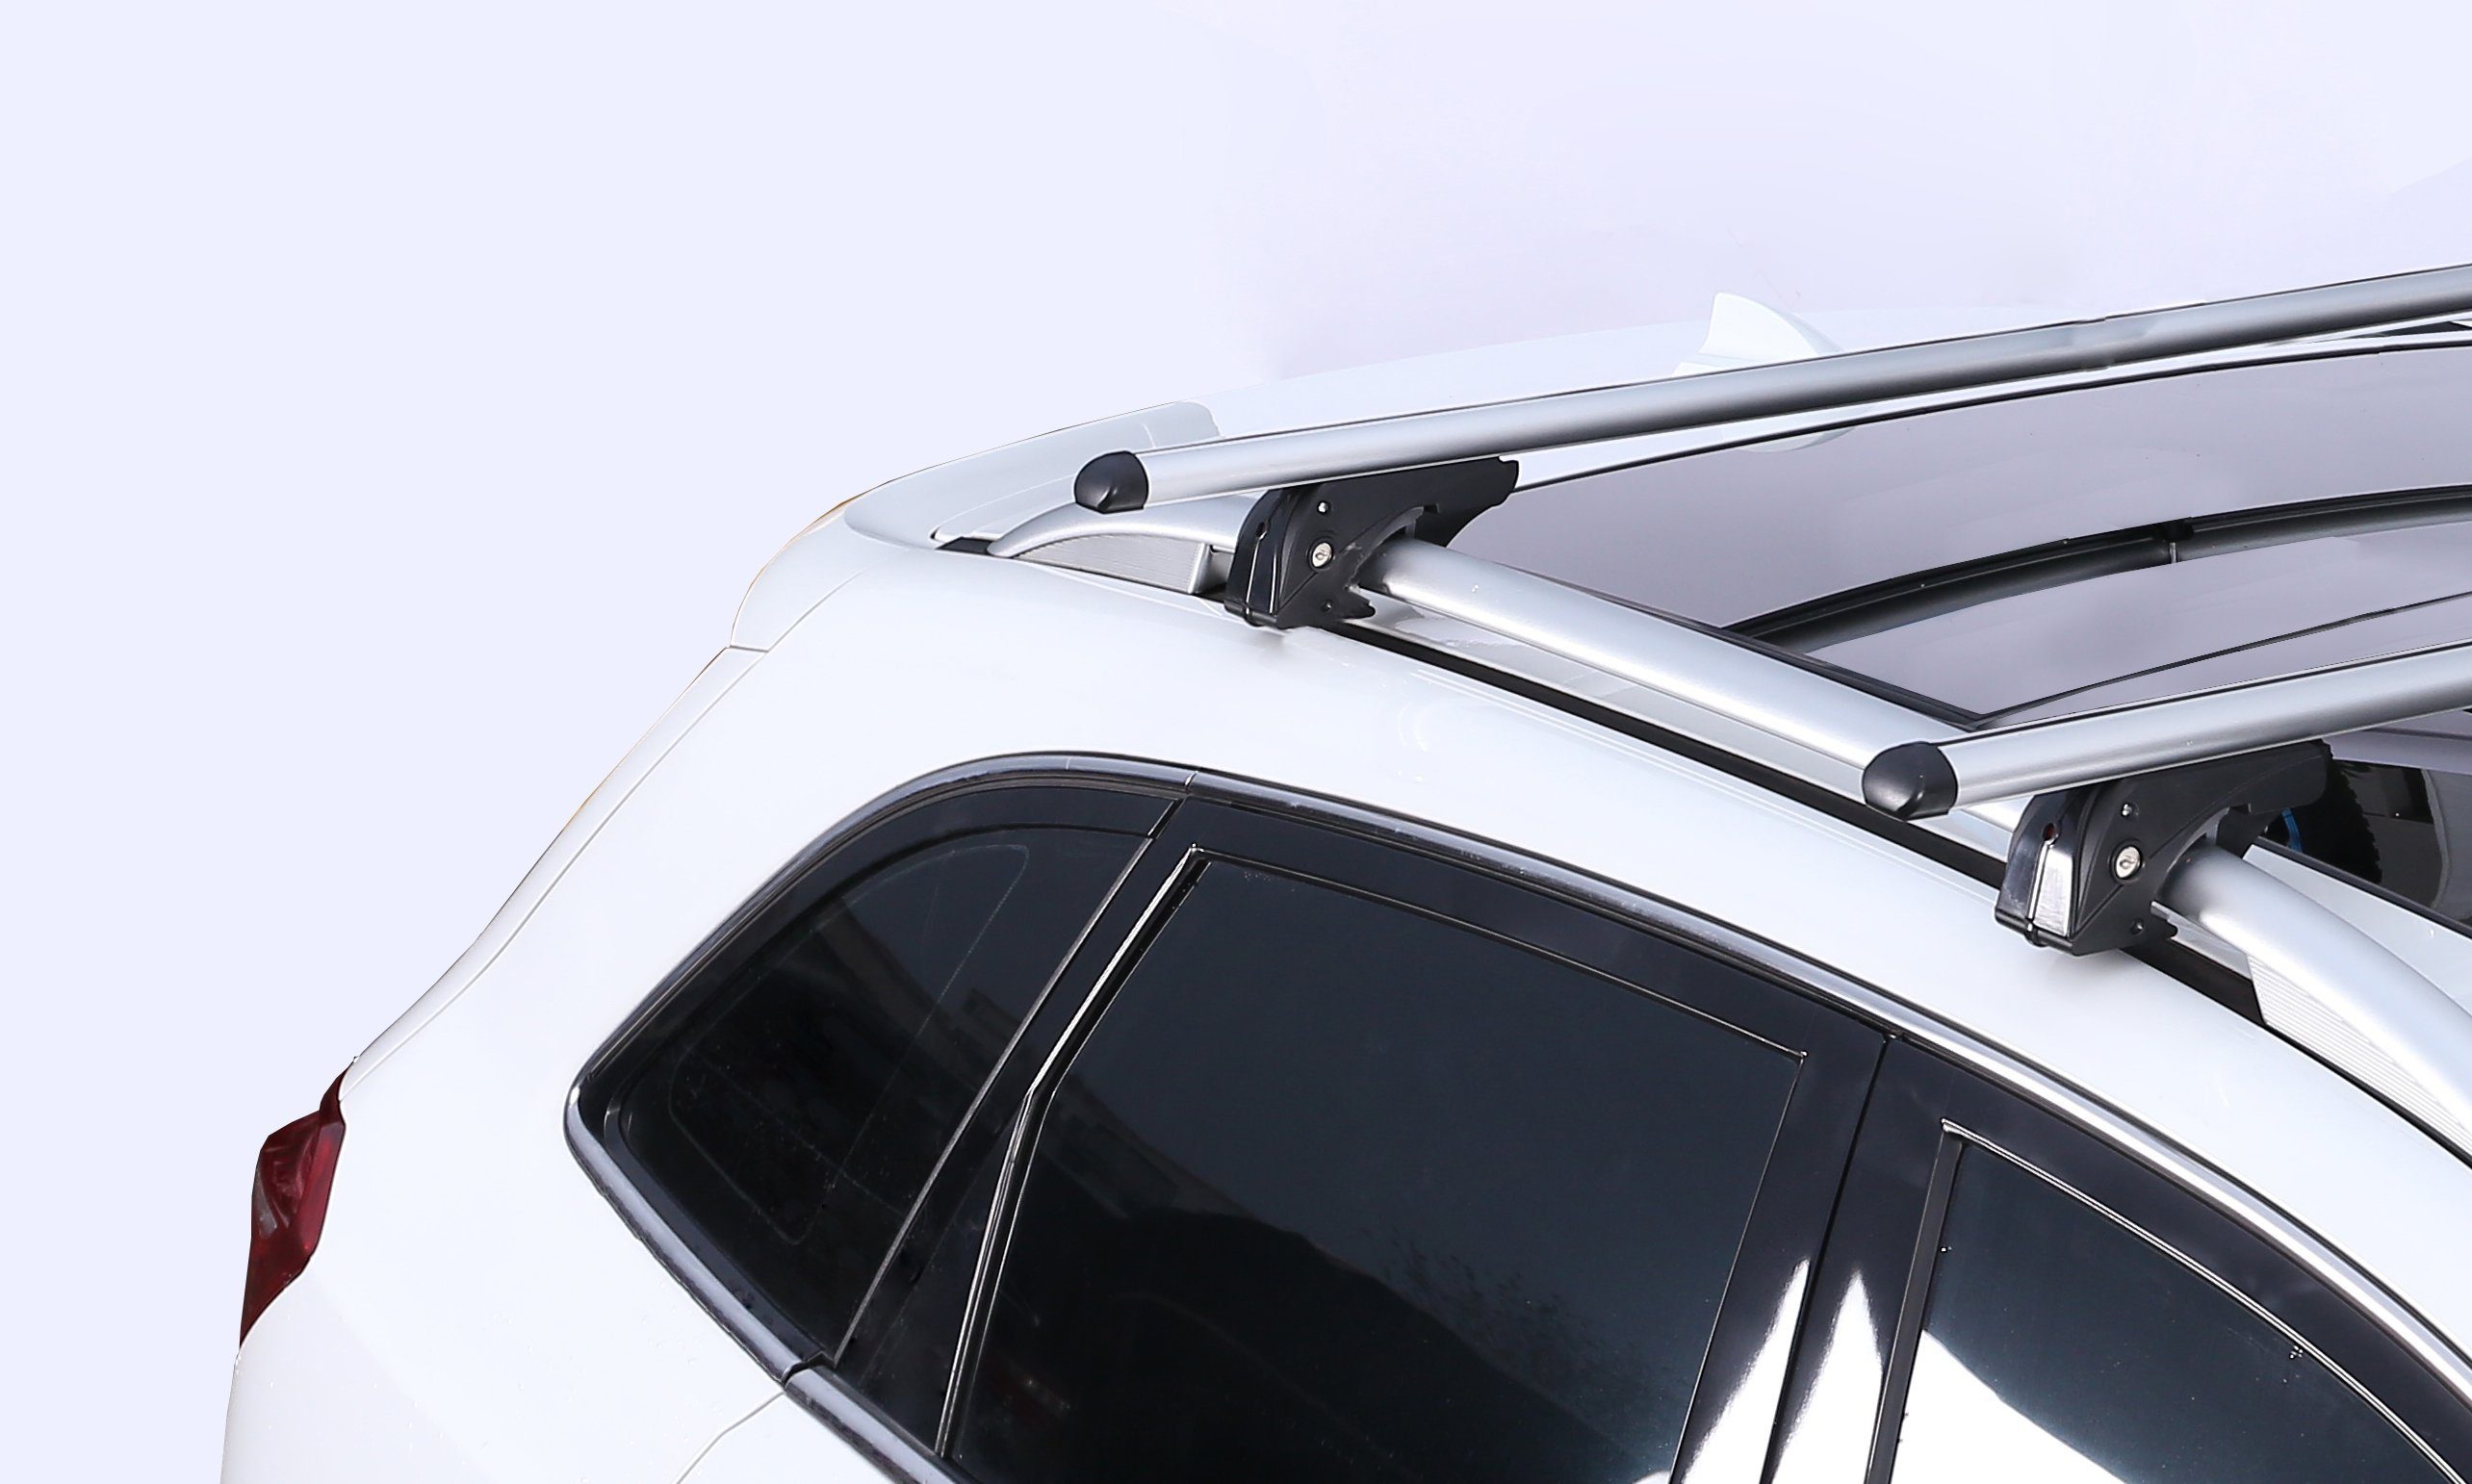 VDP Dachbox, (Für Ihren Mitsubishi Grandis mit VDPLION1 Türer) (5 Dachträger/Relingträger Dachbox/Gepäckbox Mitsubishi kompatibel Dachbox Set), 03-11, (5 Dachträger im + 03-11 Grandis Türer) CUBE470 und